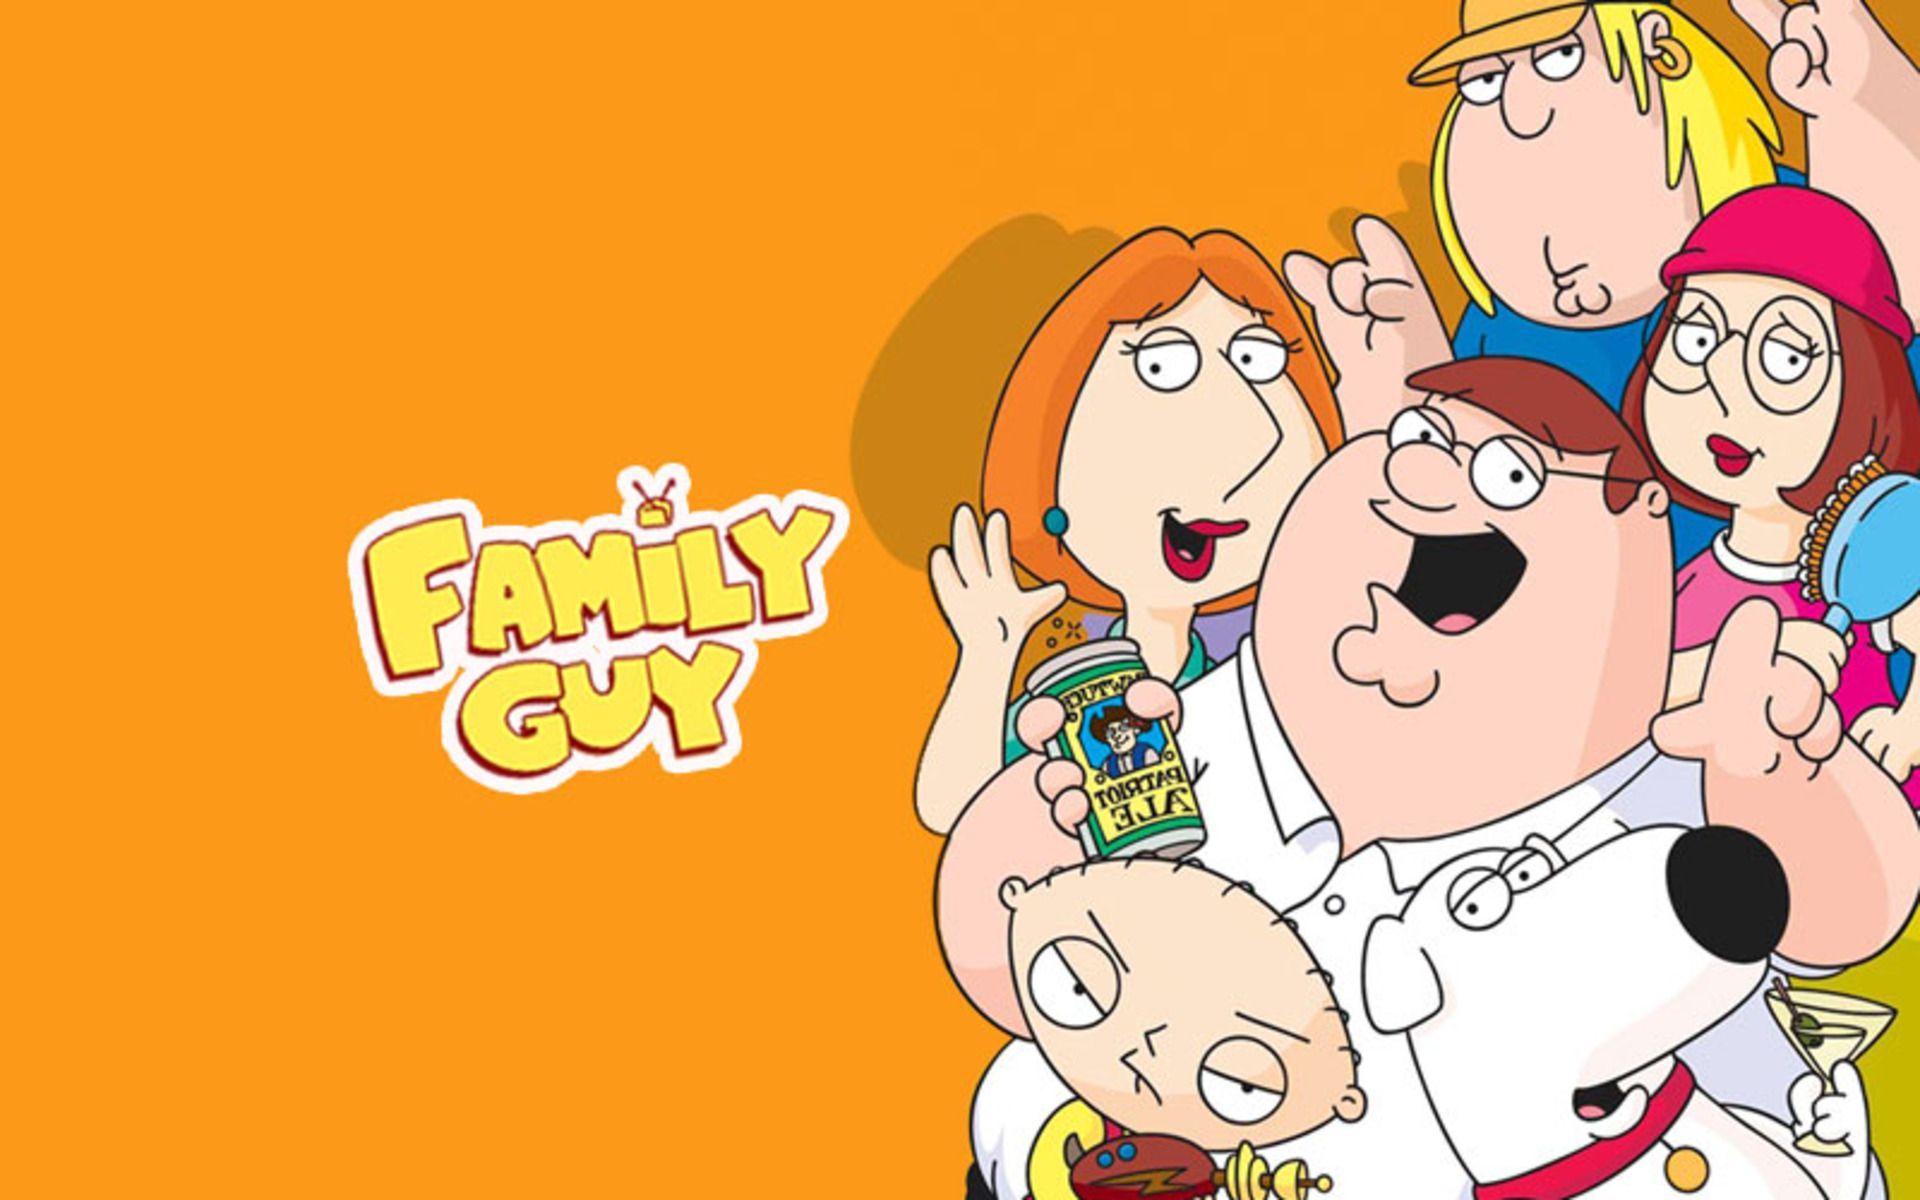 Cute Family Guy Wallpaper In High Quality, Jonny Heyfield Guy Wallpaper HD